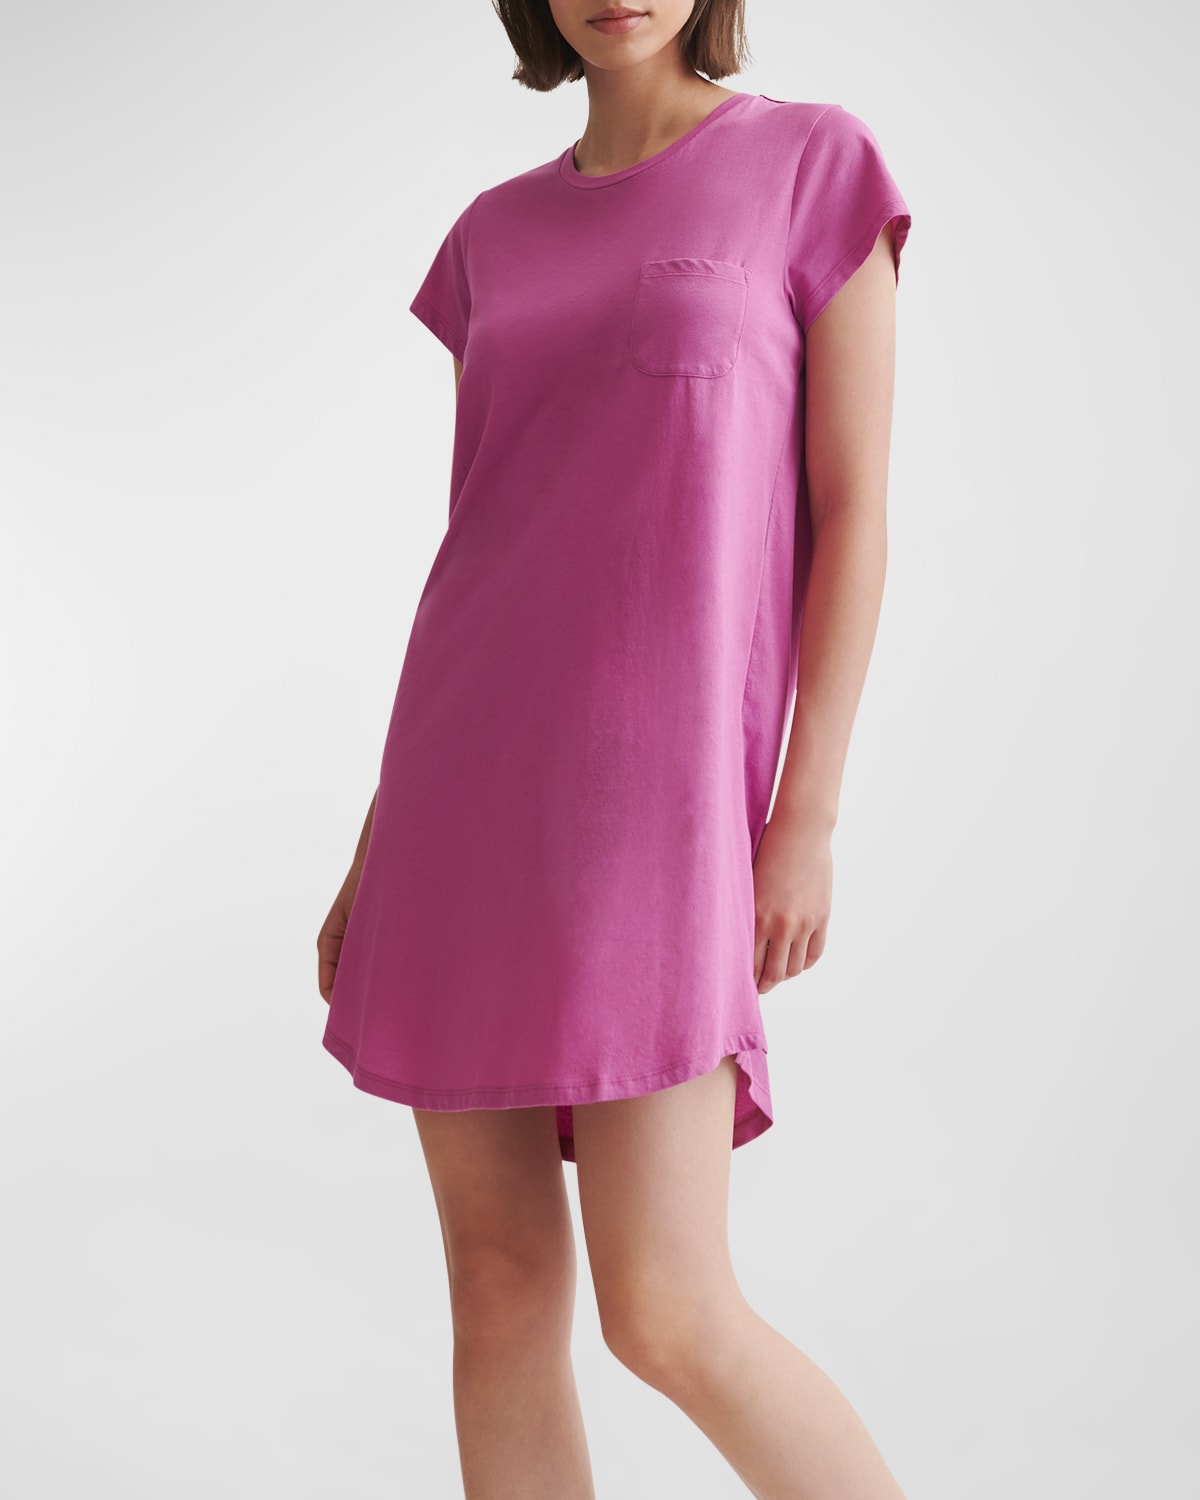 Skin Carissa Pima Cotton Sleepshirt In Pink Agate